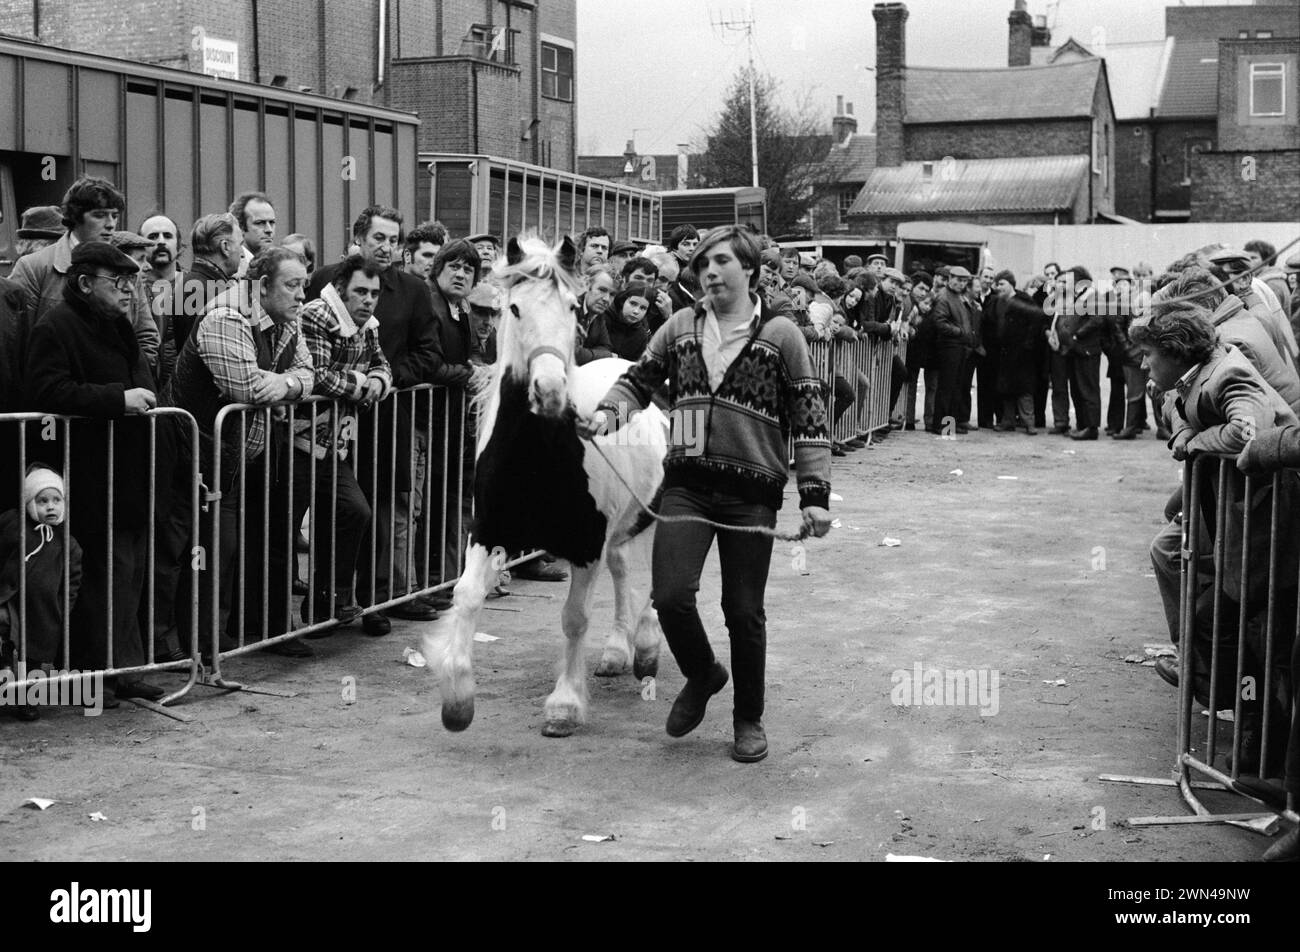 Southall Weekly Wednesday Horse Market. Danny Stubbings, âgé de 17 ans, avec un cheval sur la rêne de tête, montrant le cheval avant la vente aux enchères. Son grand-père faisait du commerce de chevaux et la famille courait le stand de thé pendant que vous conduisiez dans la cour de vente aux enchères. Southall, West London, Ealing, Angleterre années 1983 1980 Royaume-Uni HOMER SYKES Banque D'Images